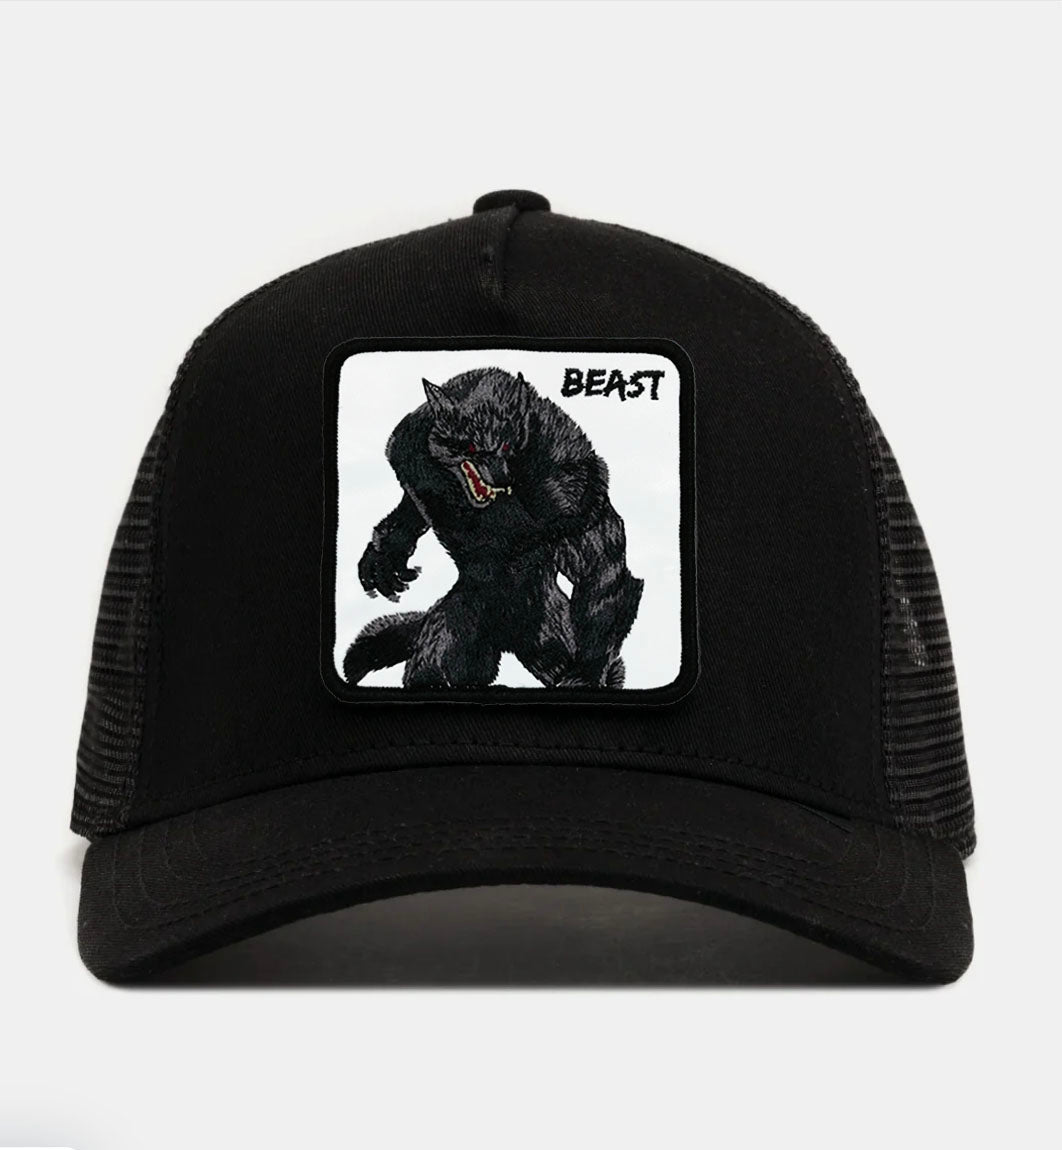 Werewolf "beast" Trucker hat